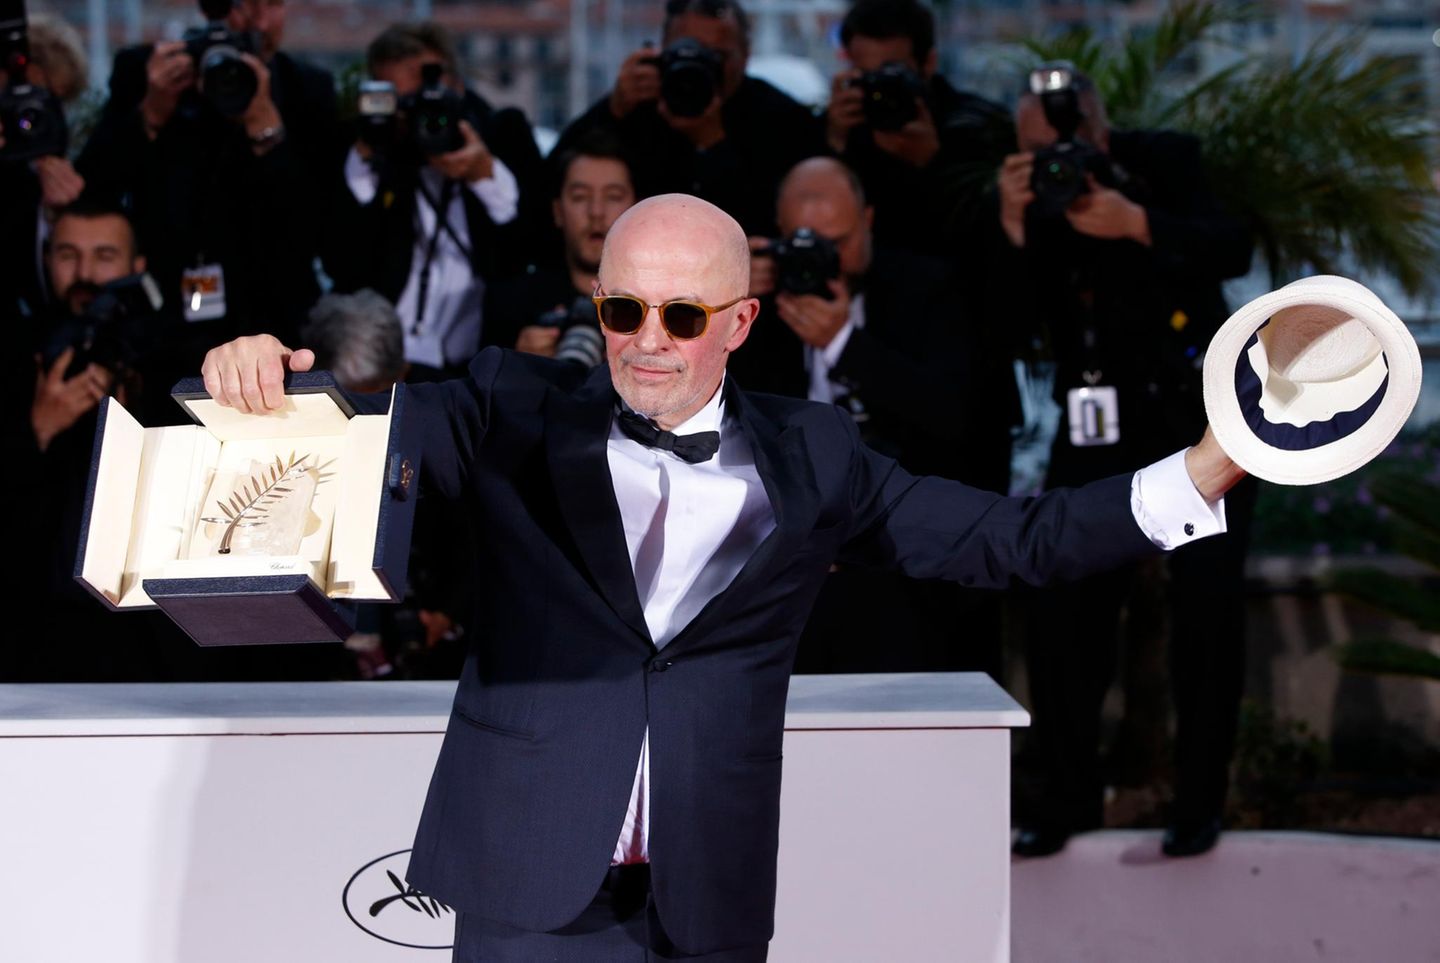 Regisseur Jacques Audiard freut sich über seine Auszeichnung für den Film "Dheepan".